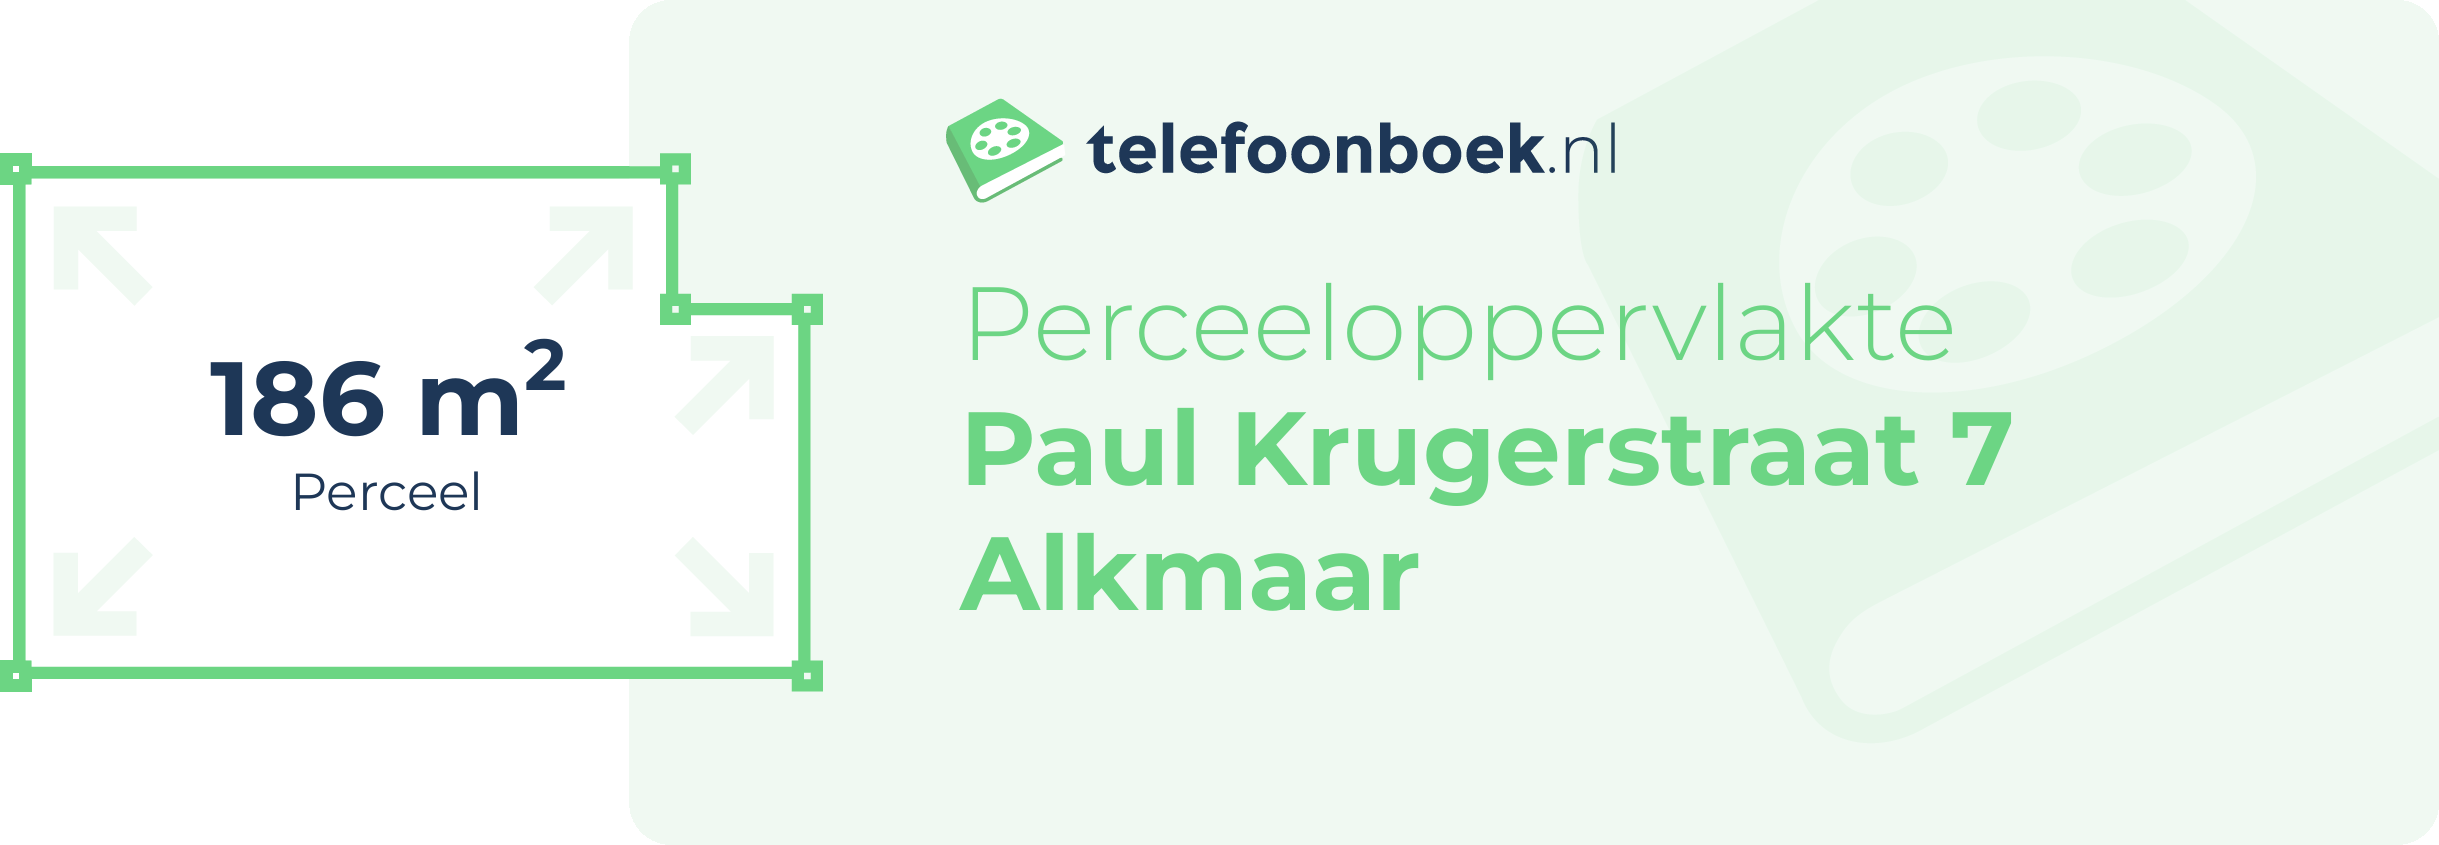 Perceeloppervlakte Paul Krugerstraat 7 Alkmaar